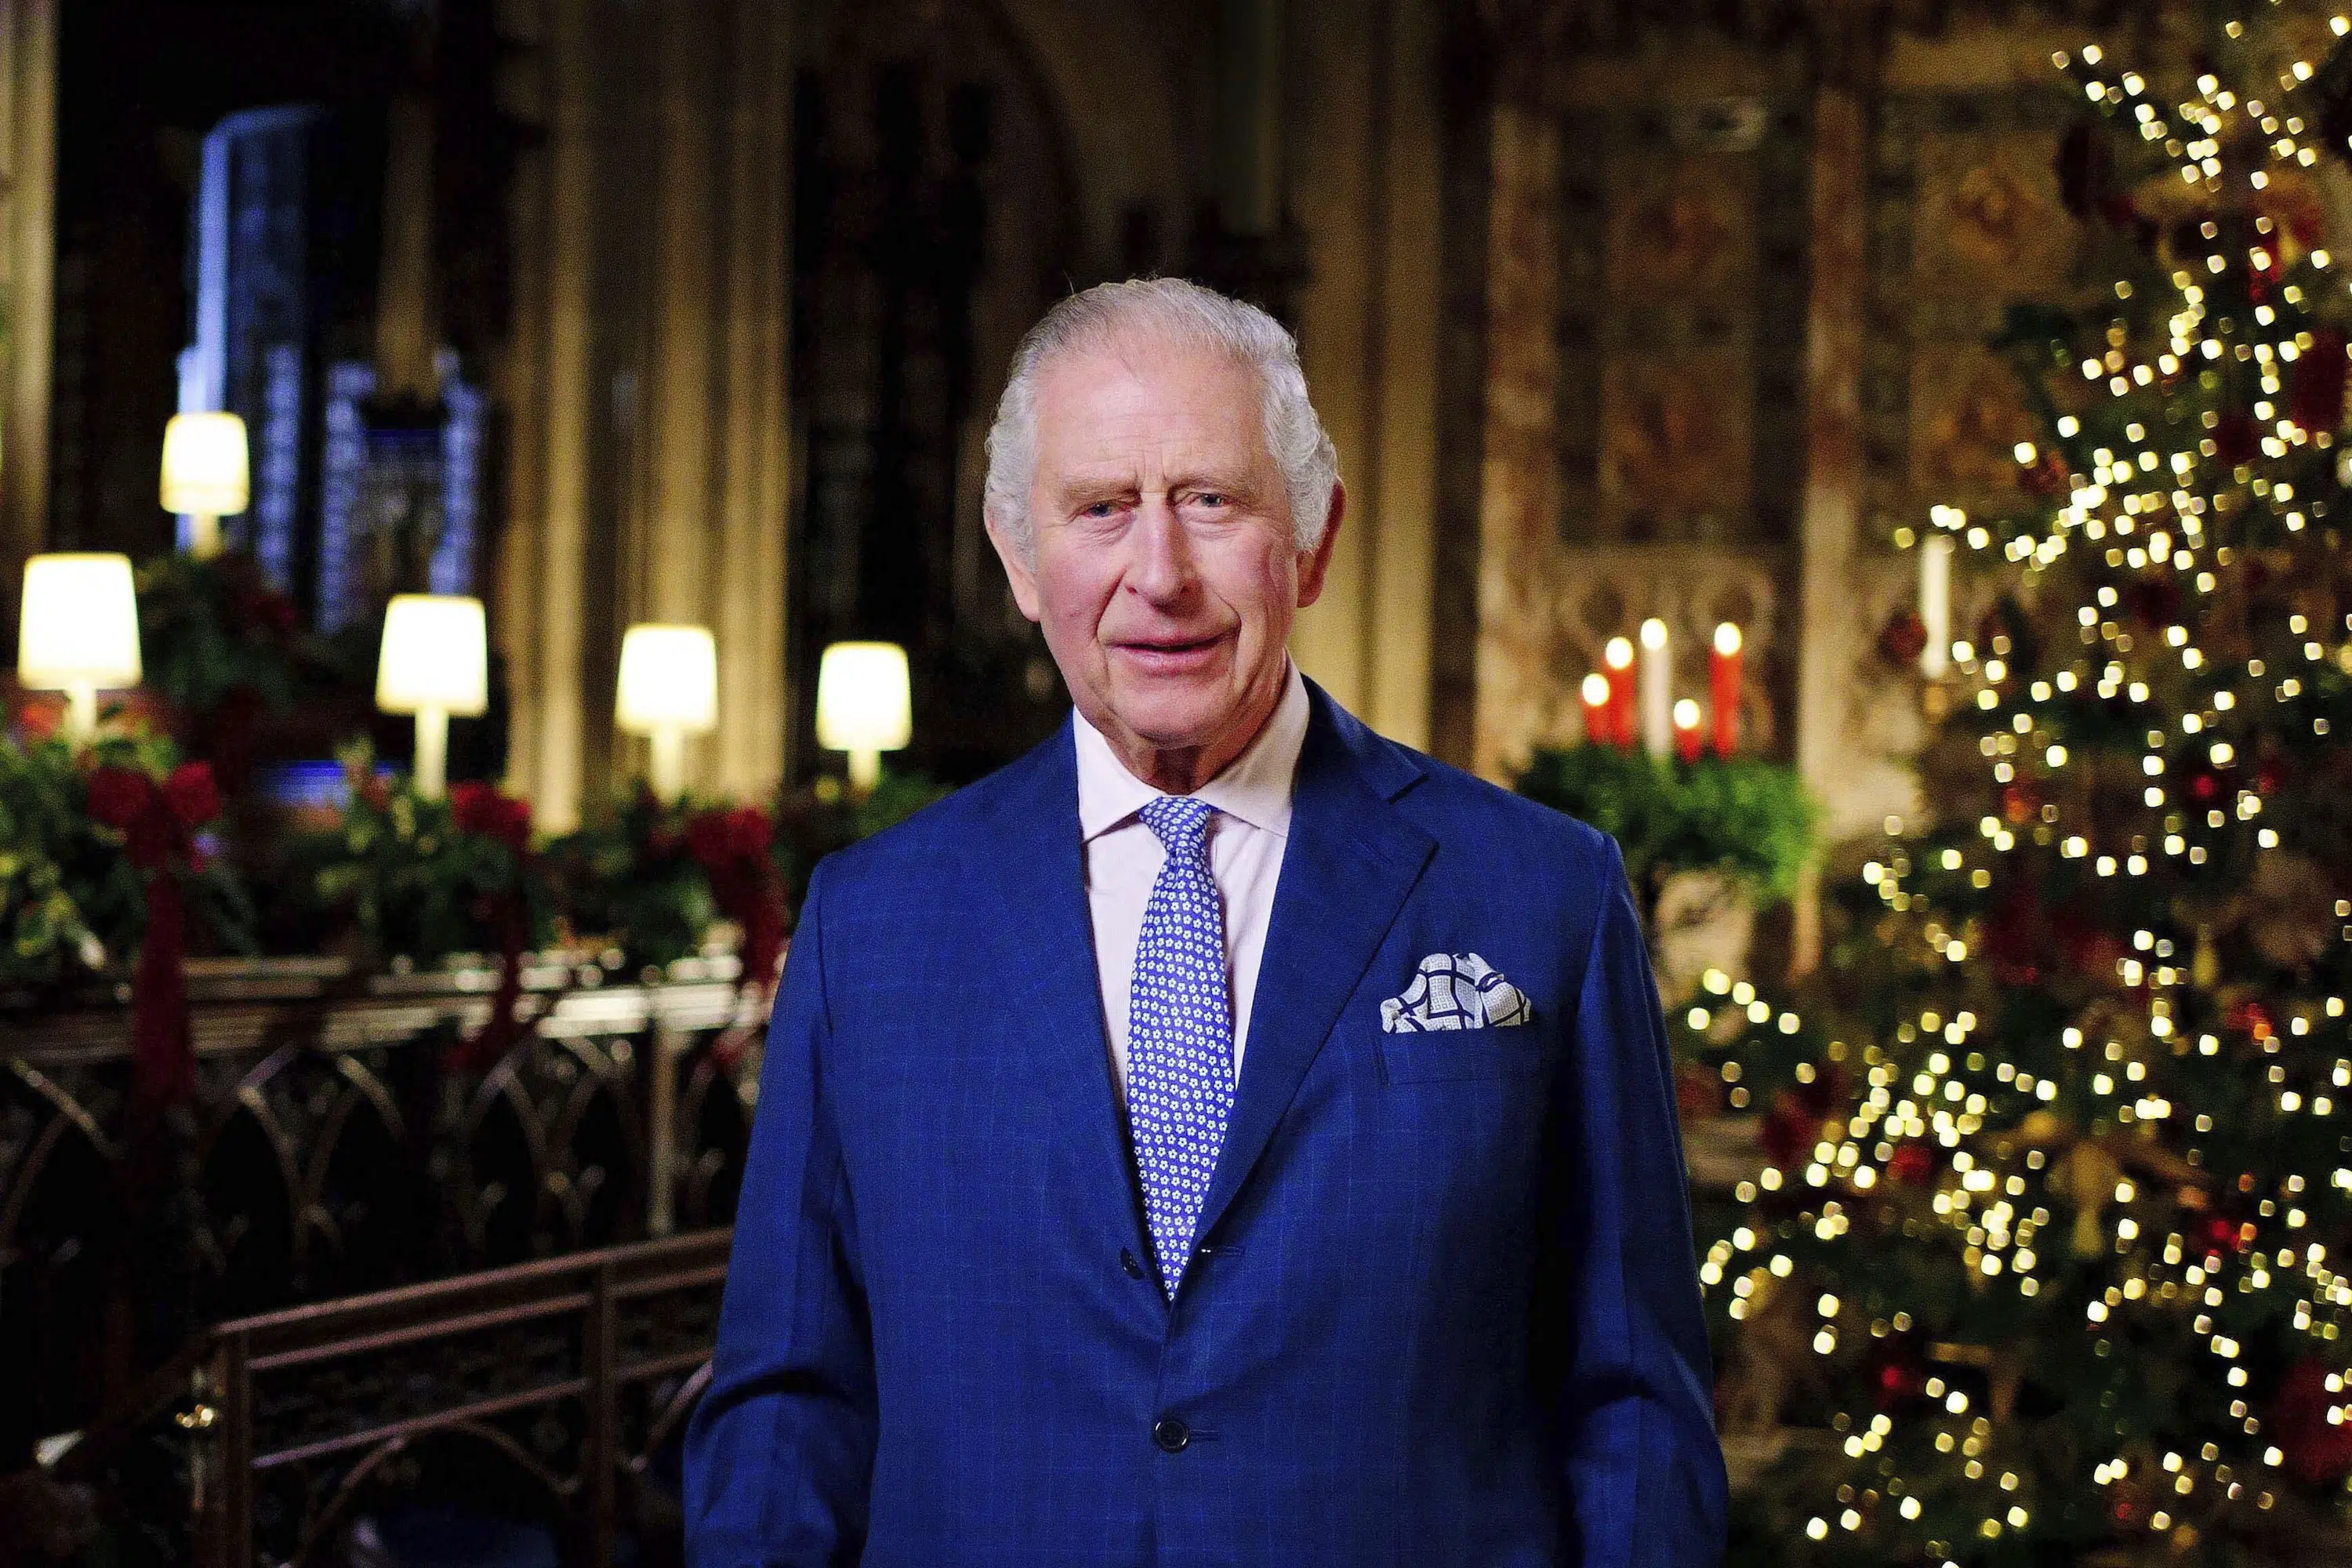 Le roi Charles salue feu la reine et les fonctionnaires dans un discours